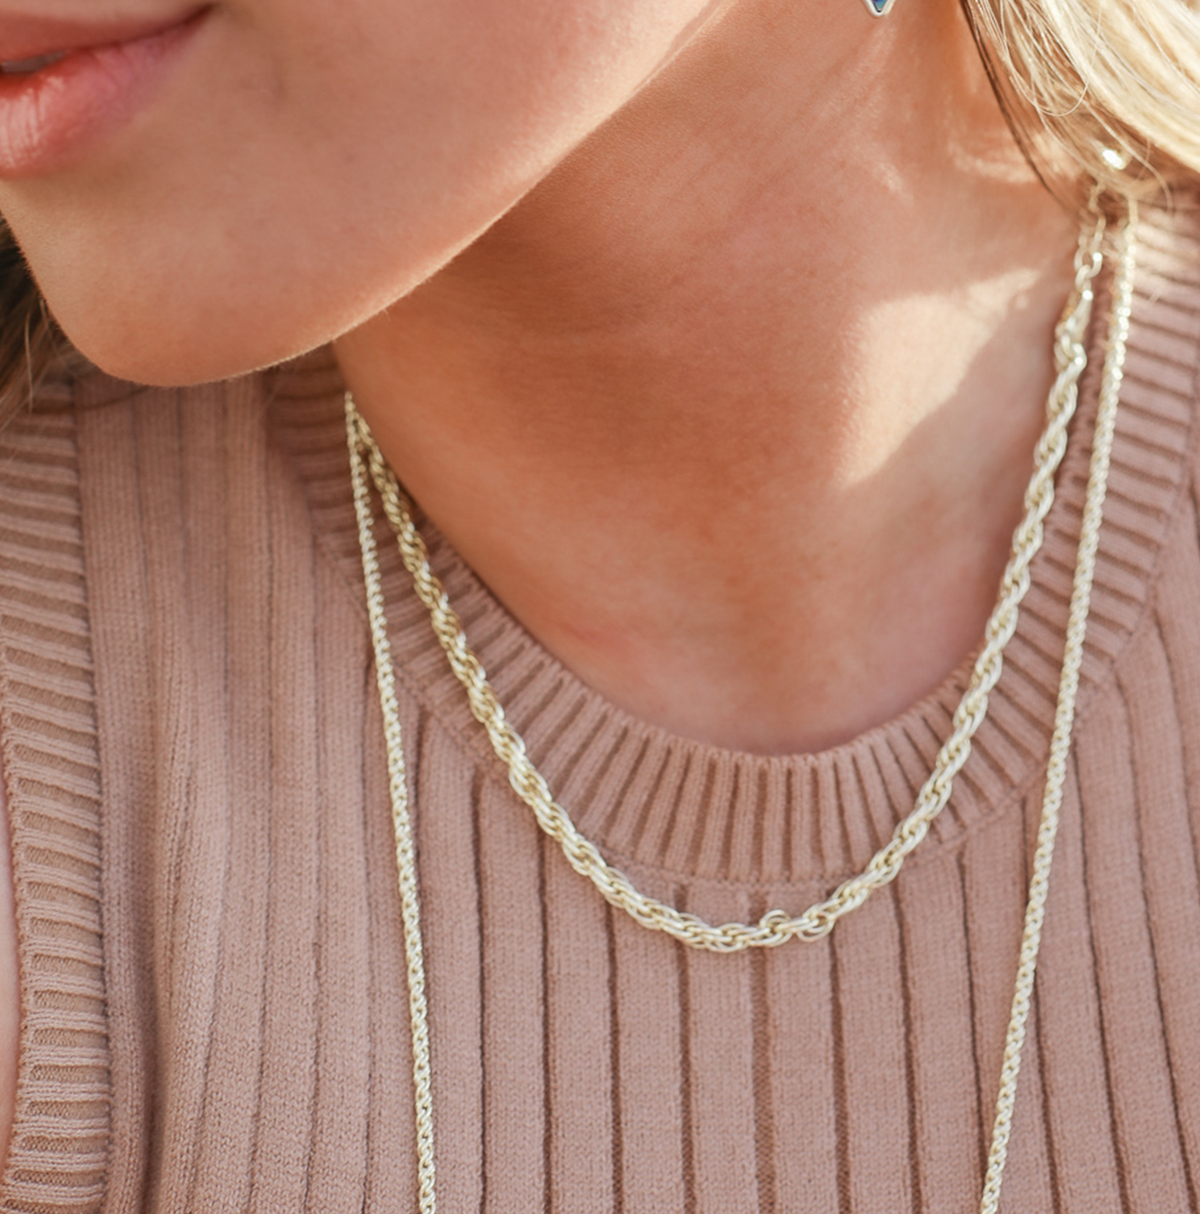 natalie wood designs gold braided chain neckalce